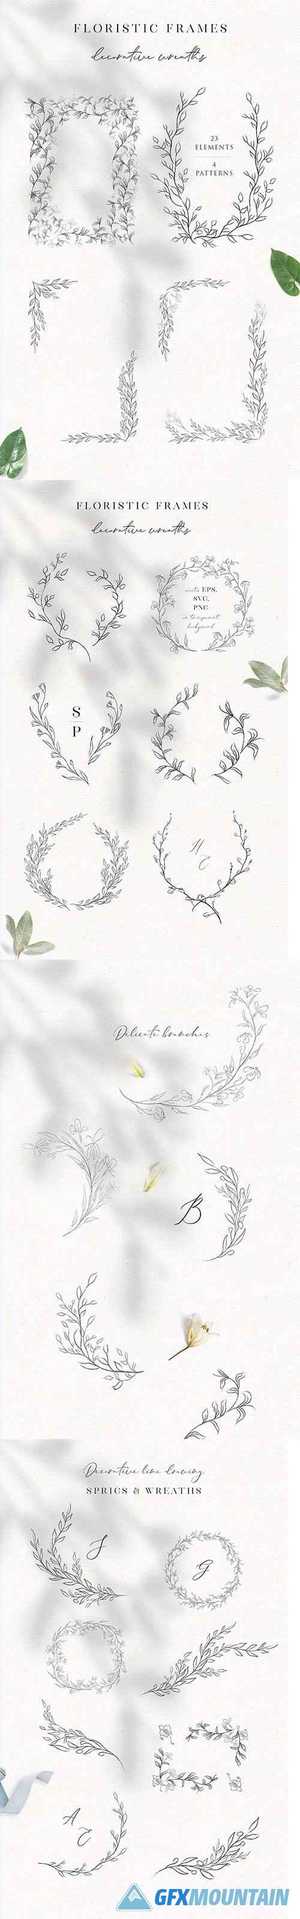 Line Drawn Floral Wreaths, Sprigs, botanicals